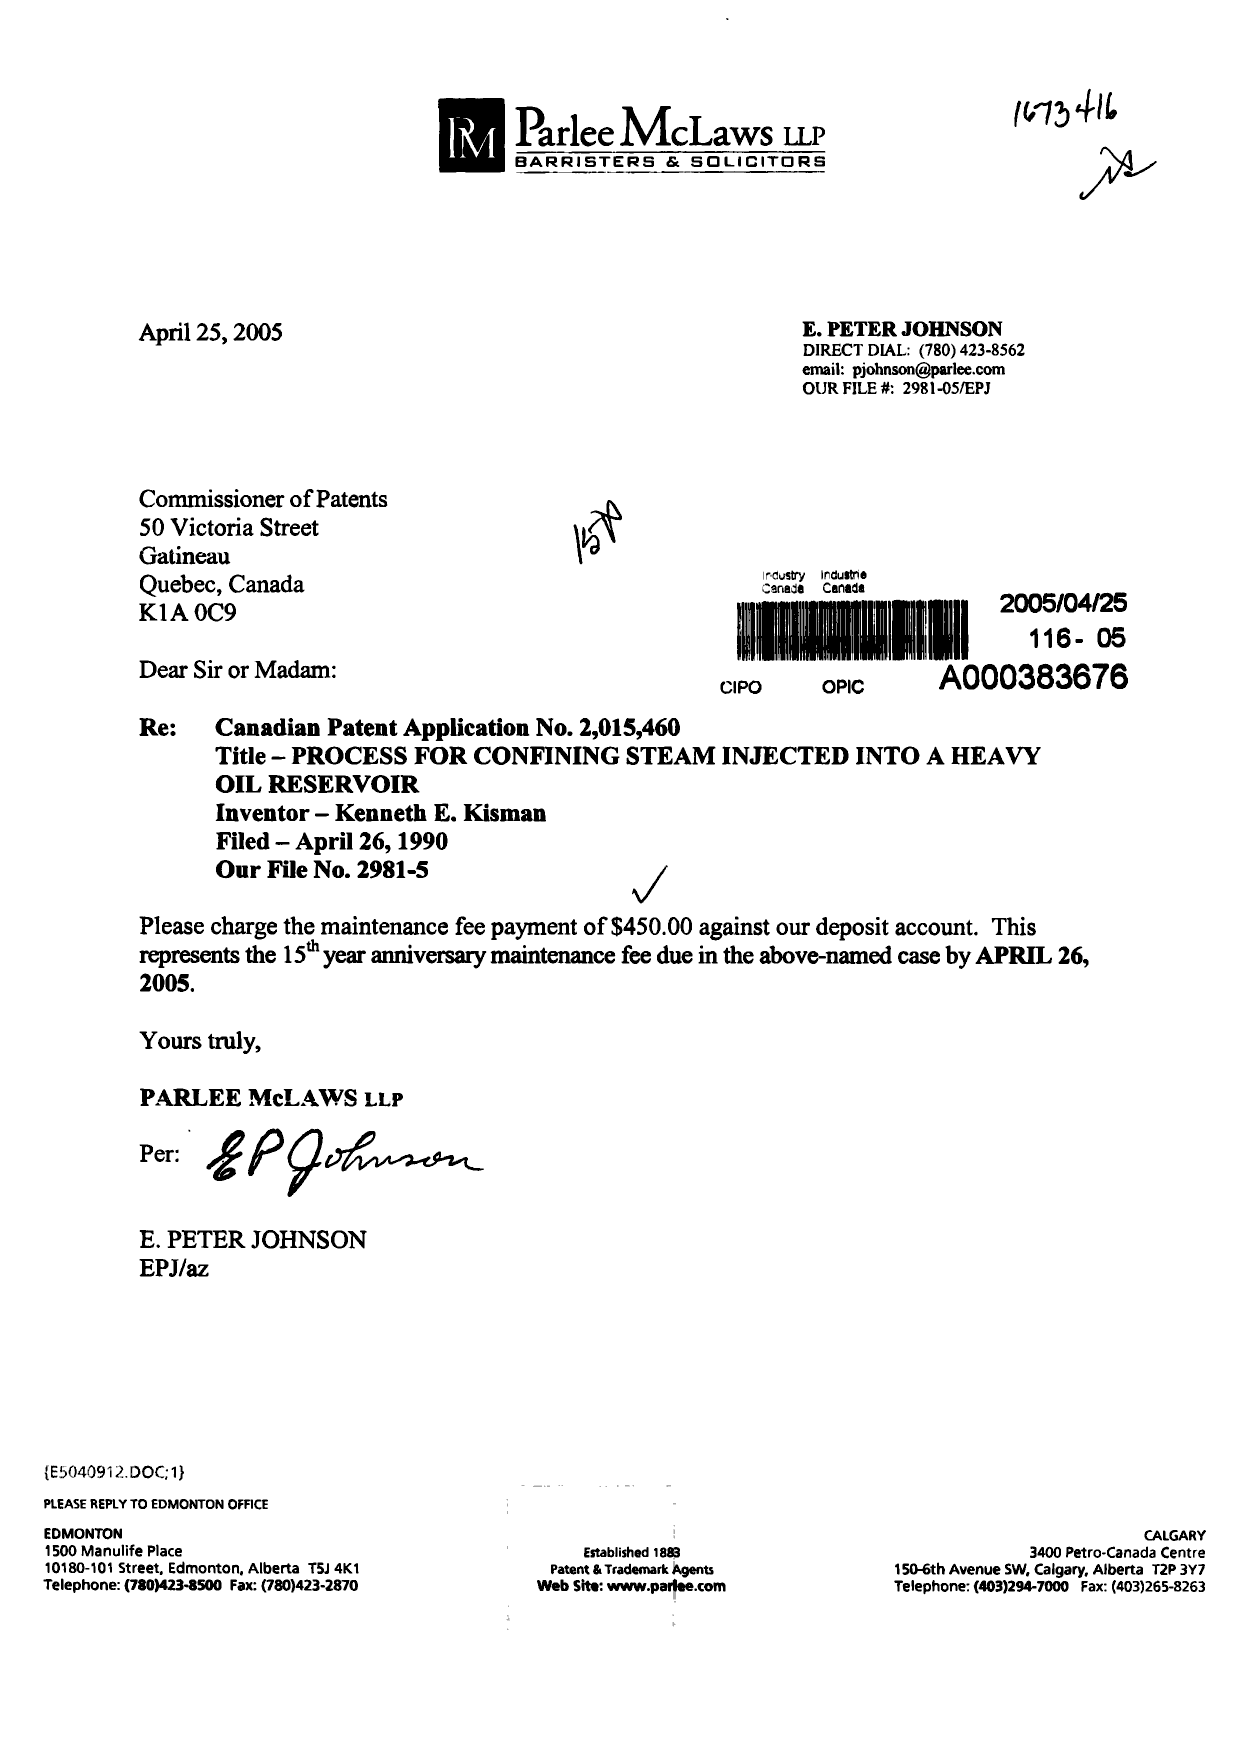 Document de brevet canadien 2015460. Taxes 20050425. Image 1 de 1